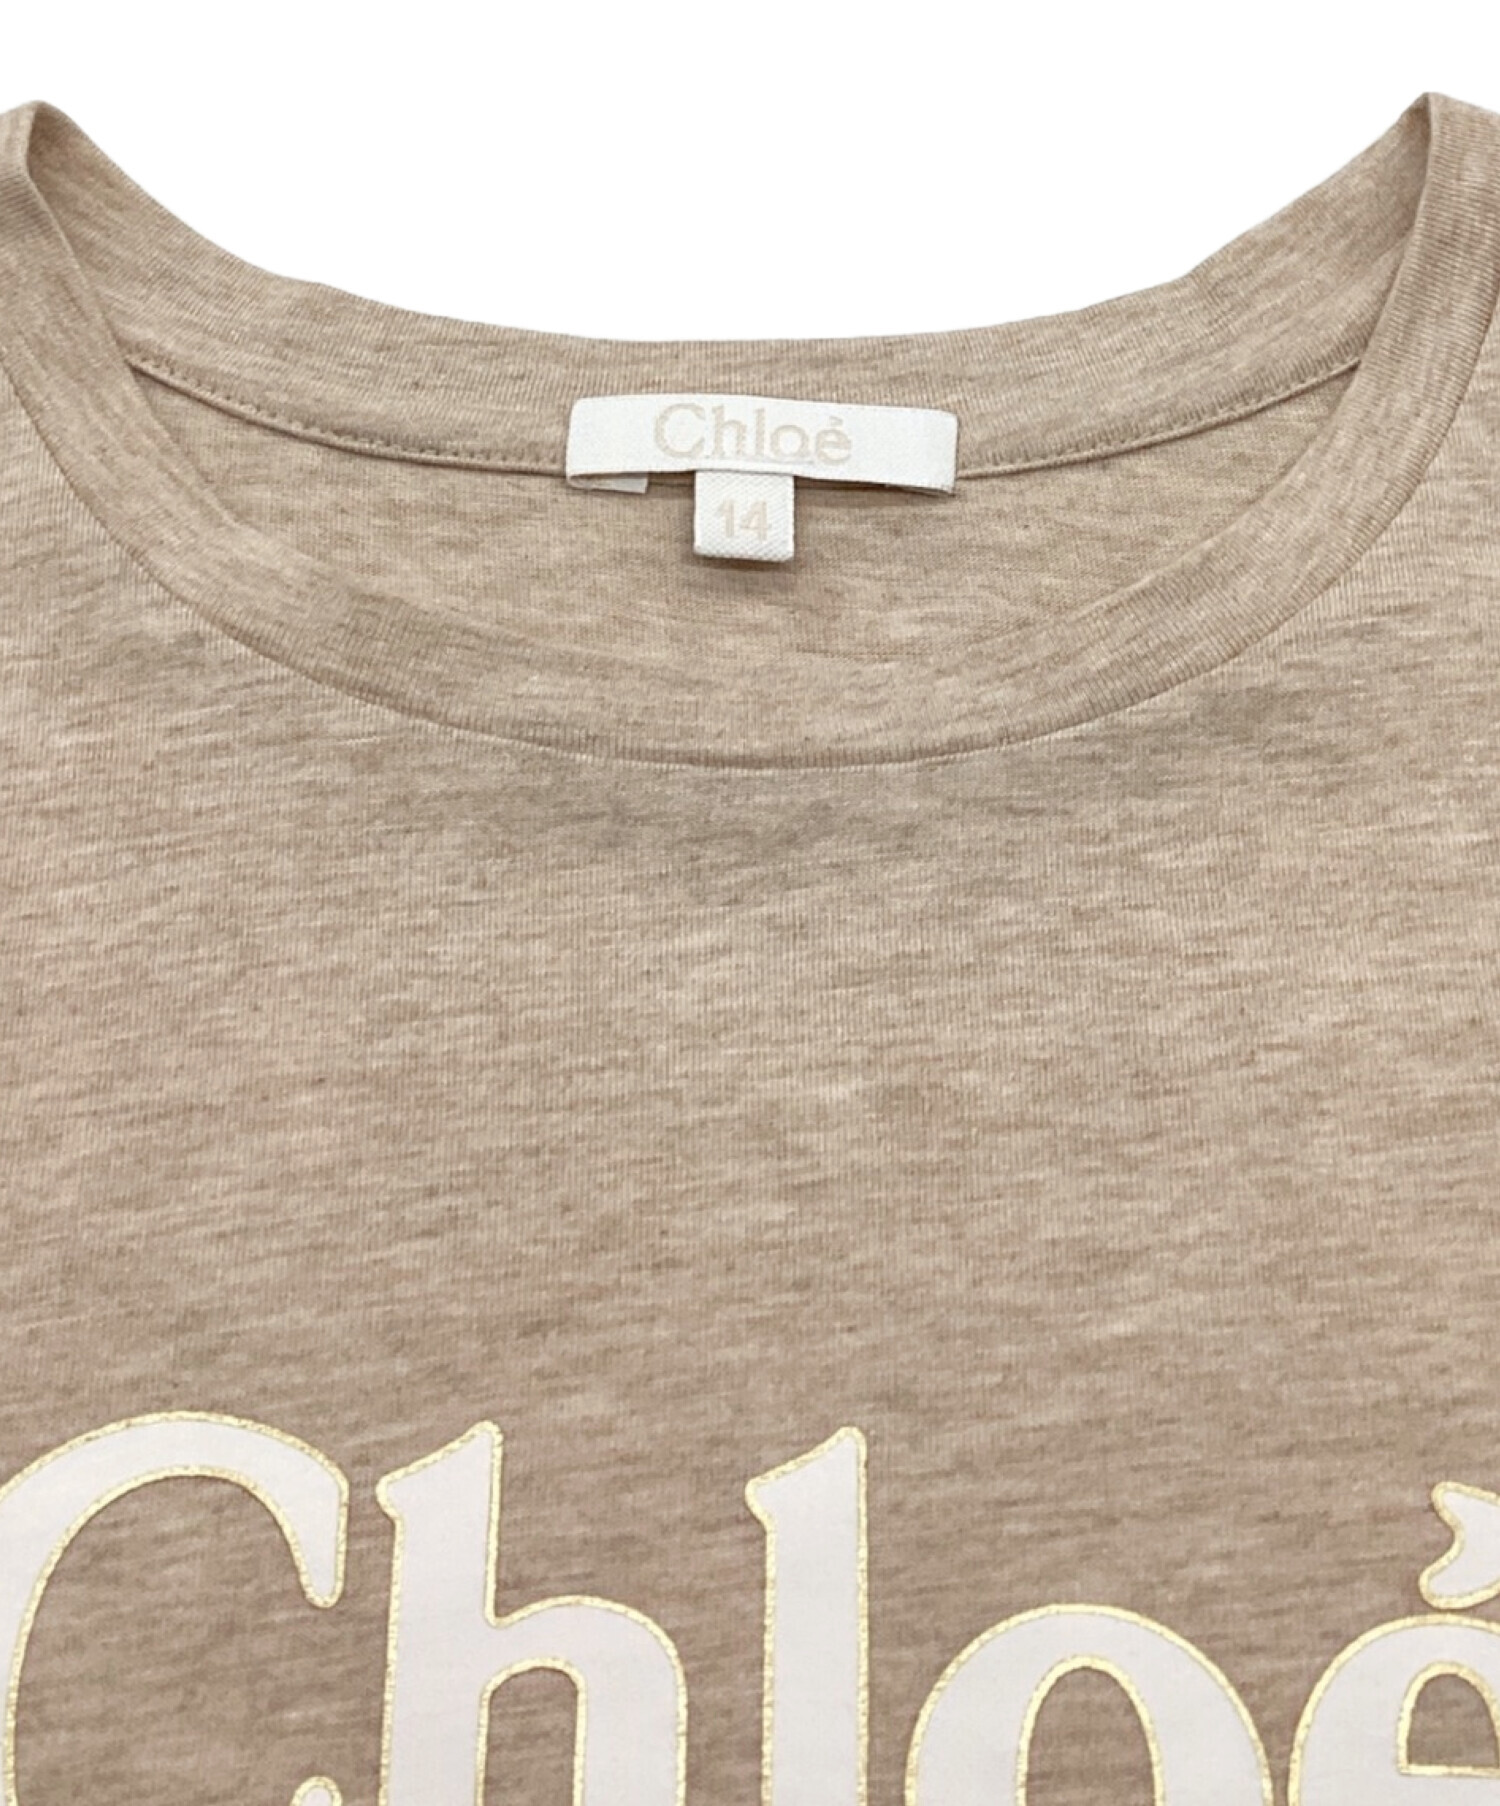 Chloe (クロエ) ロゴプリントTシャツ　クルーネック ベージュ サイズ:14